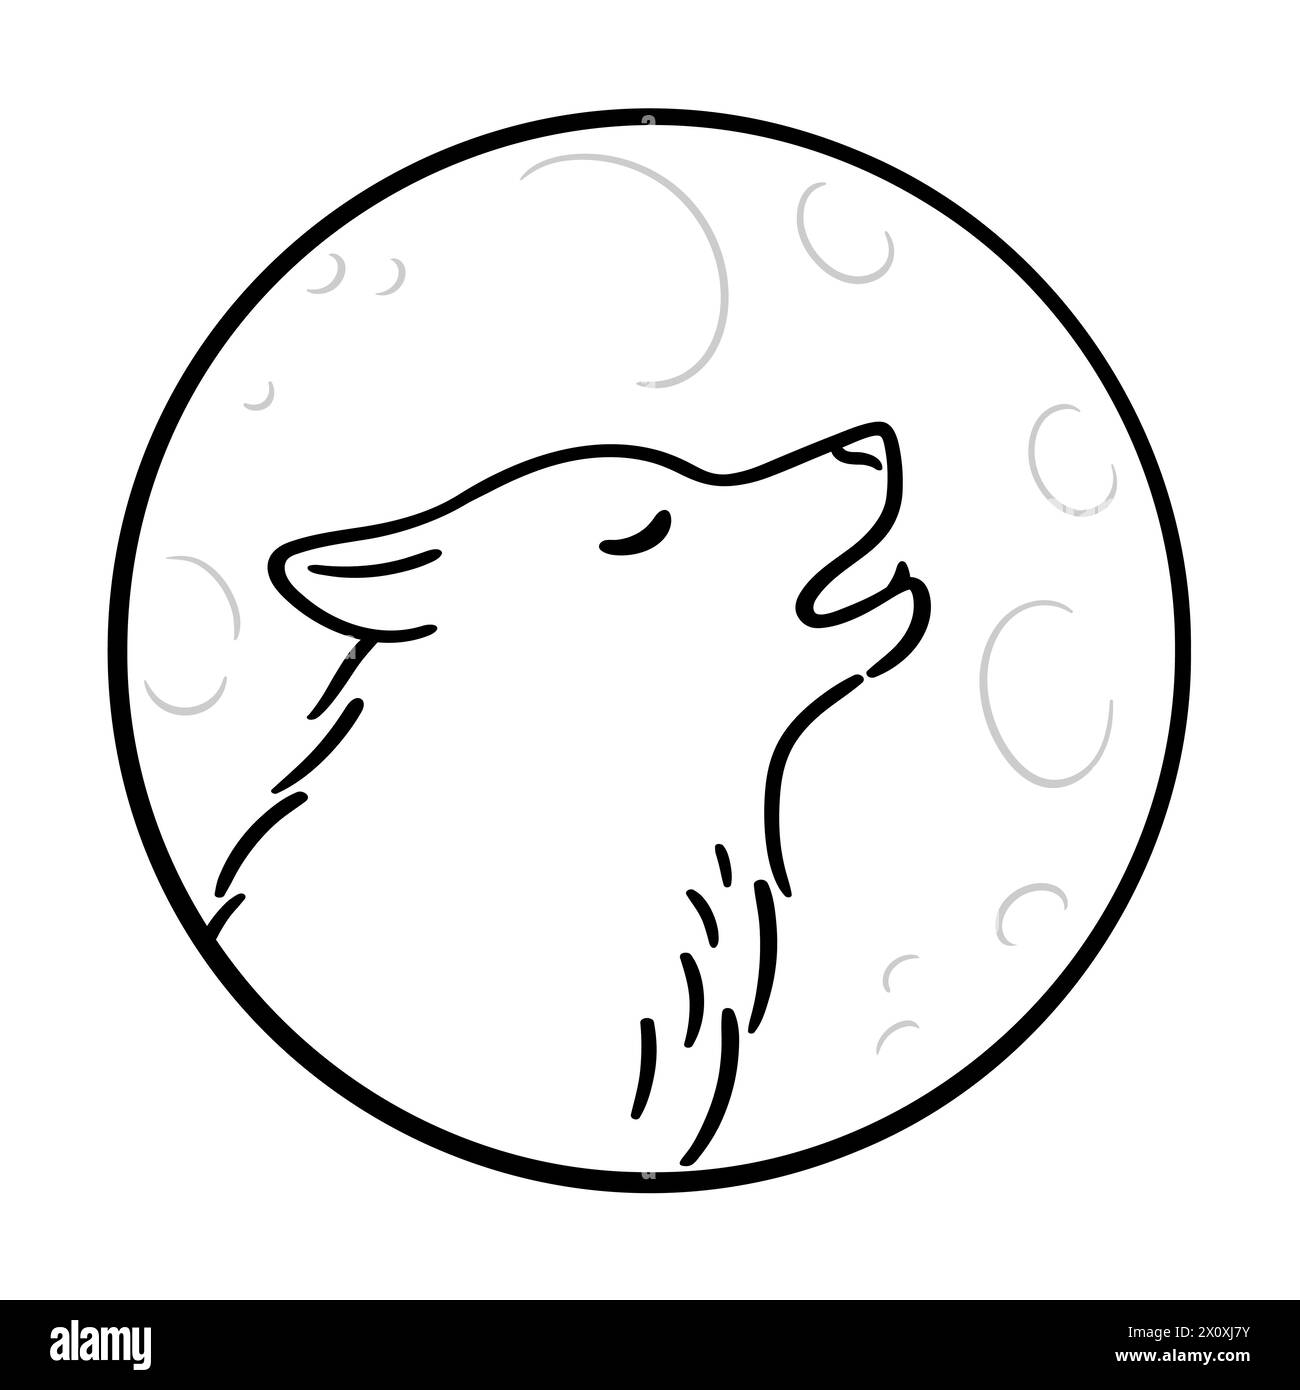 Lupo ulululante sulla luna, disegno in linea bianco e nero. Semplice scarabocchio di profilo della testa di lupo in cerchio. Illustrazione vettoriale. Illustrazione Vettoriale